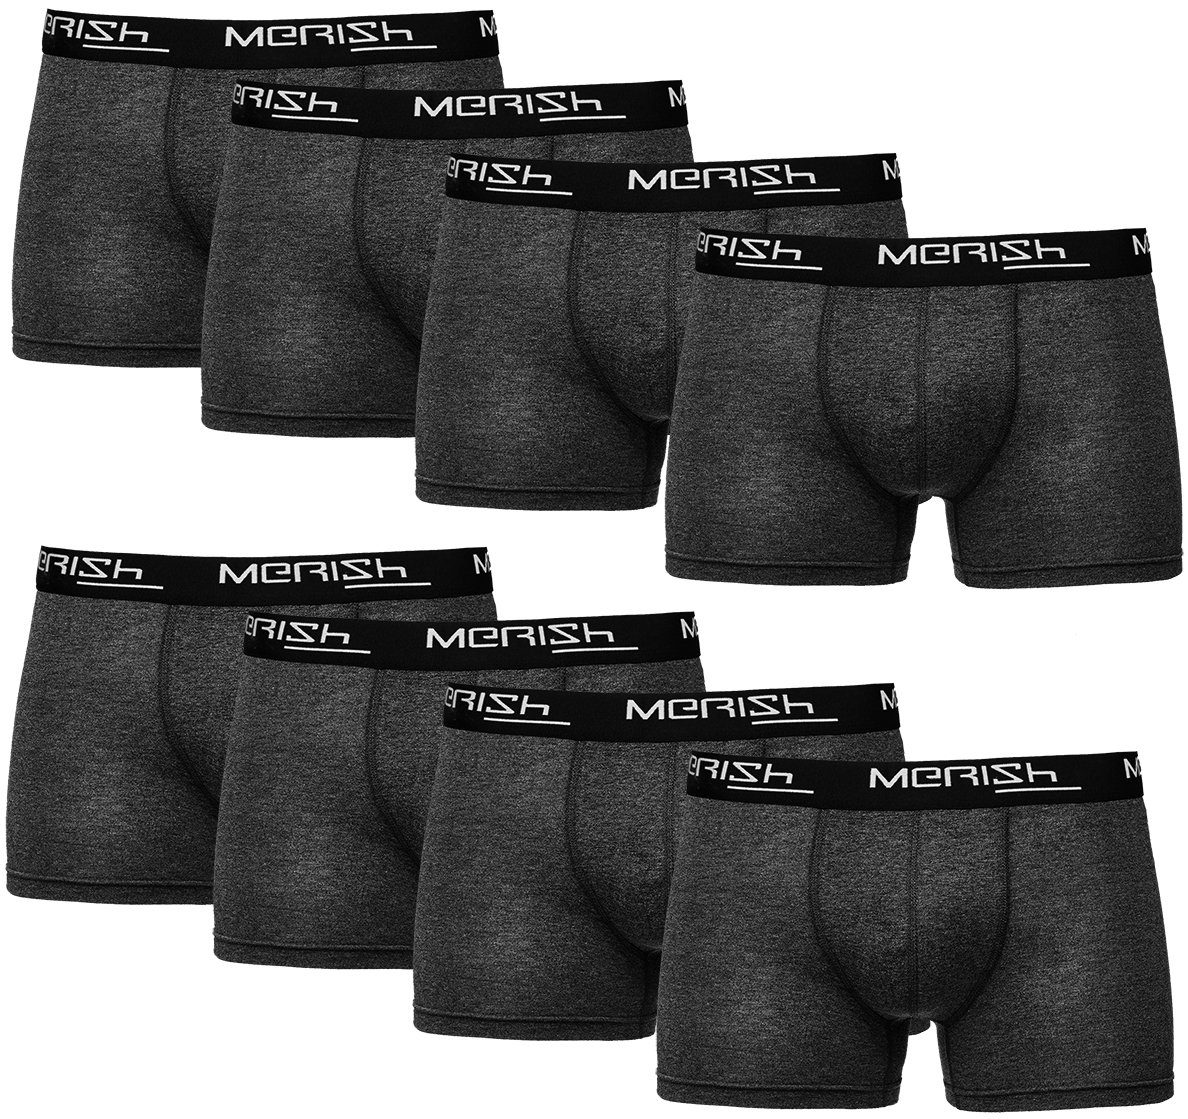 MERISH Boxershorts Herren Männer Unterhosen Baumwolle Premium Qualität perfekte Passform (Vorteilspack, 8er-Pack) S - 7XL 216g-anthrazit